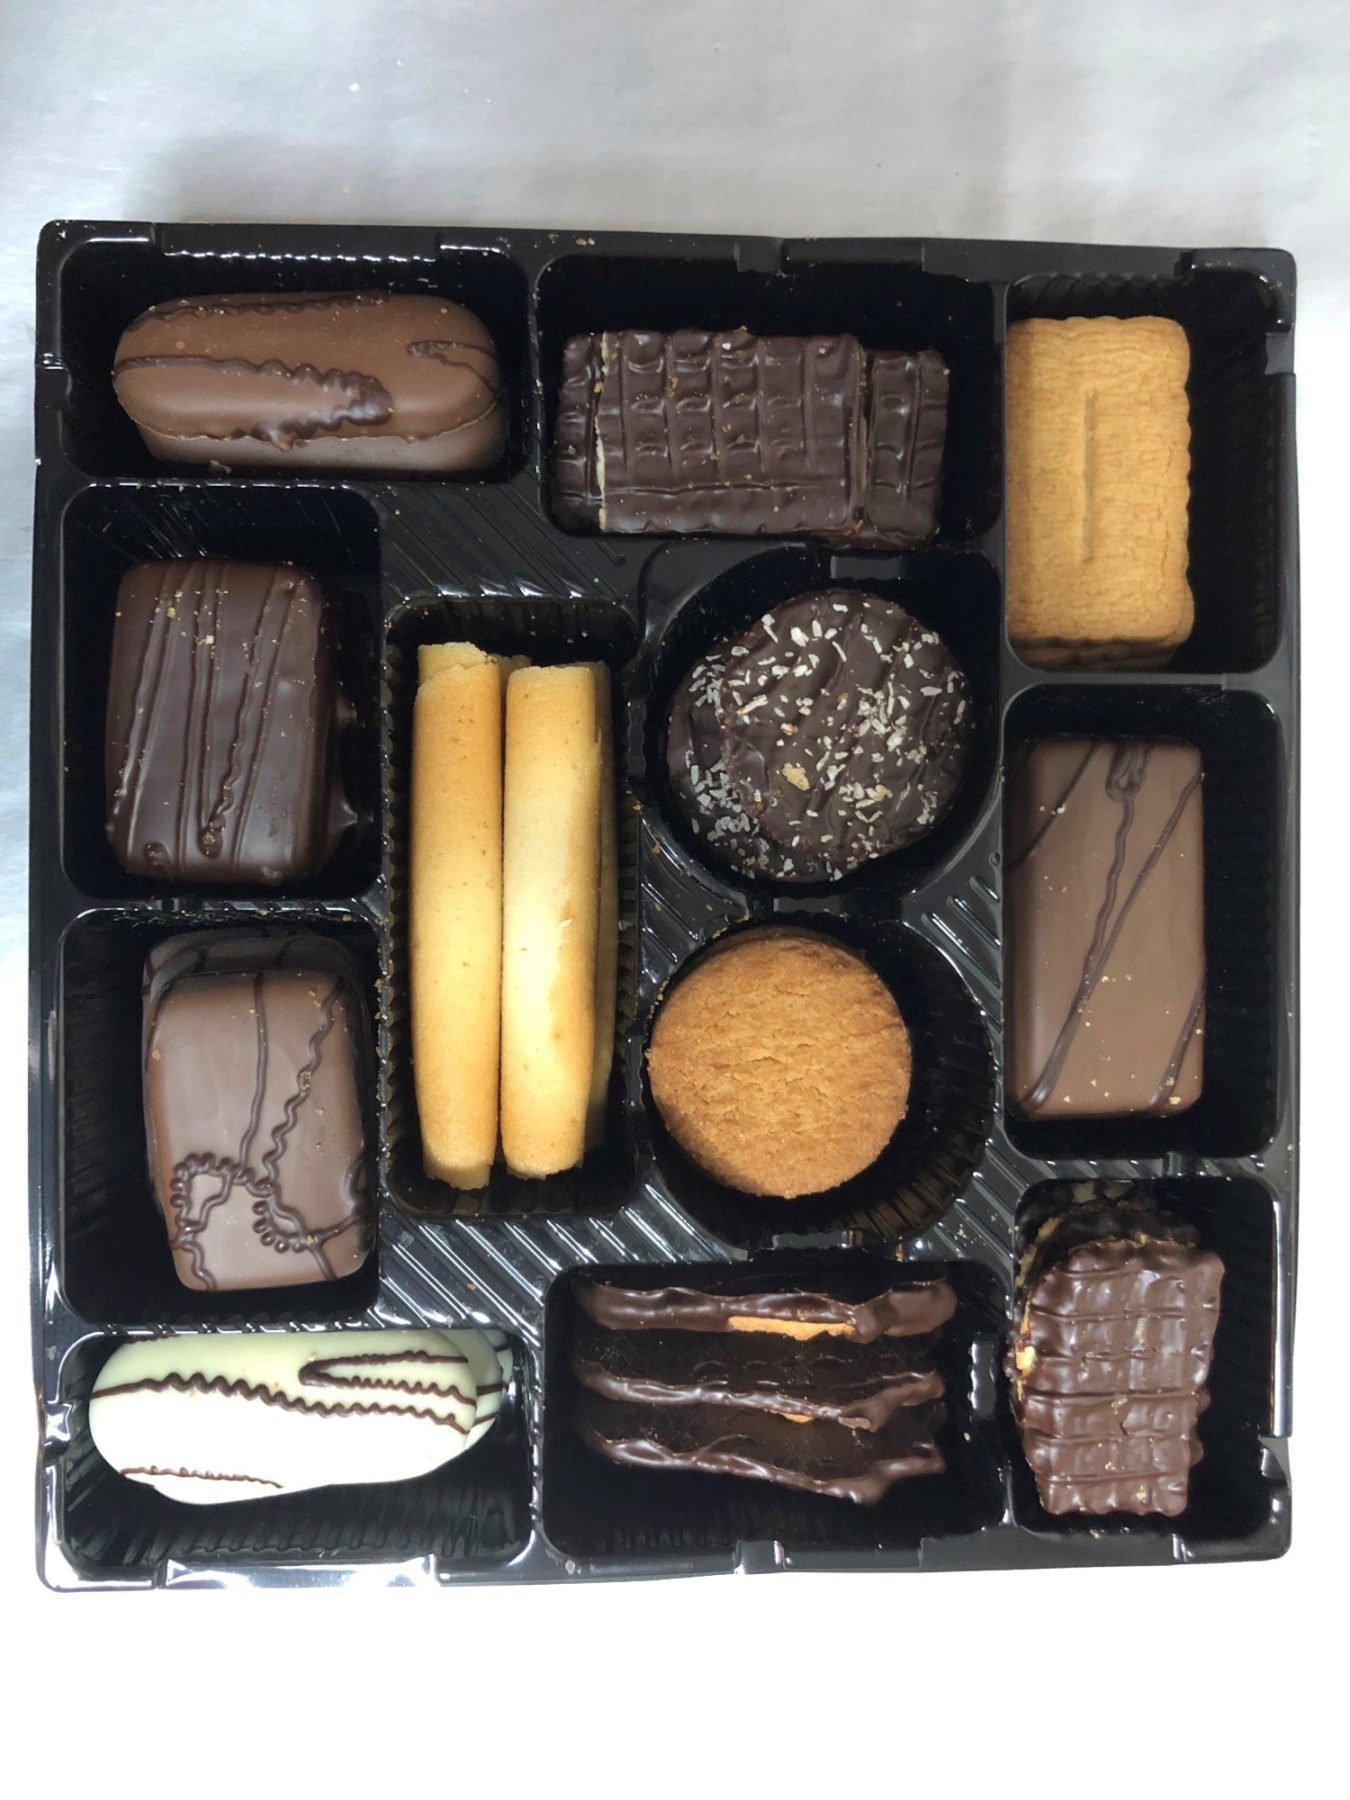 Boni biscuit variety box